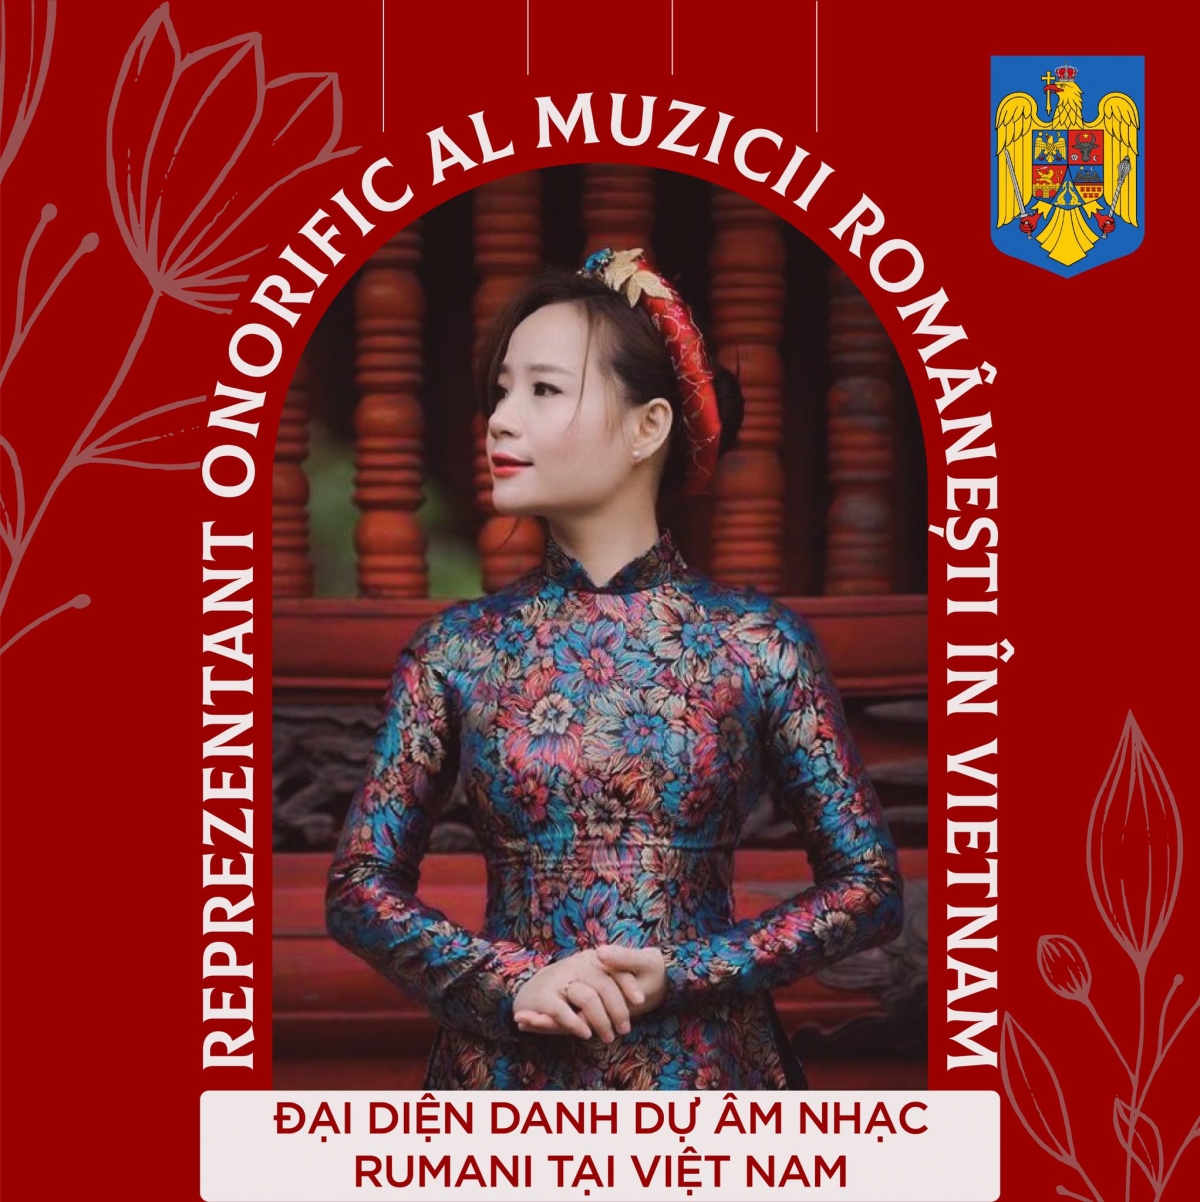 Sự kiện được tổ chức nhân dịp nghệ sĩ cello Đinh Hoài Xuân được công nhận là "Đại diện danh dự âm nhạc Romania" tại Việt Nam